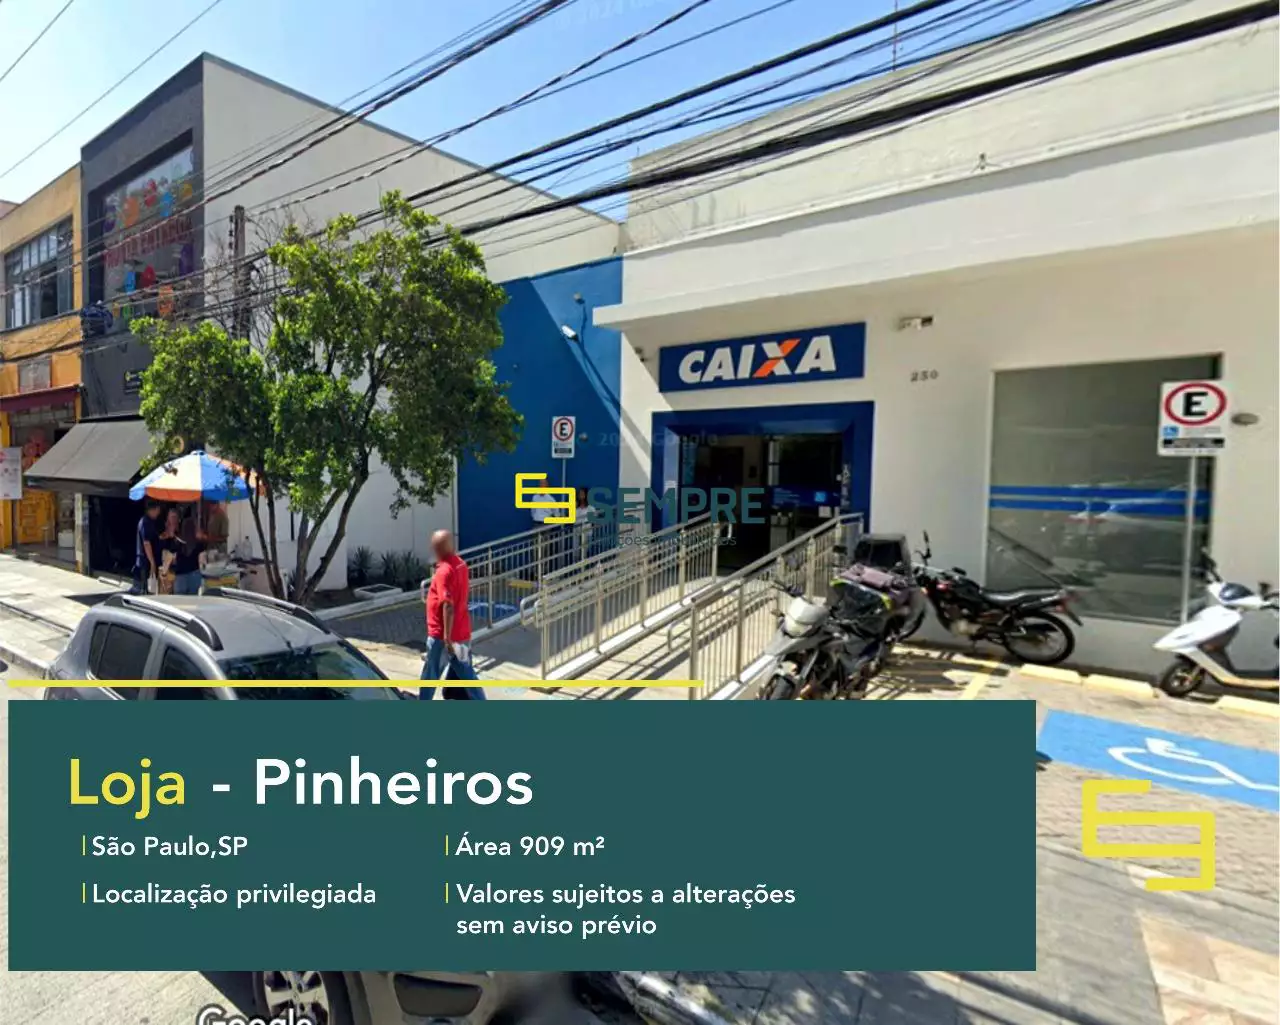 Loja para locação no Pinheiros em São Paulo, excelente localização. O estabelecimento comercial conta, sobretudo, com área de 909,6 m².